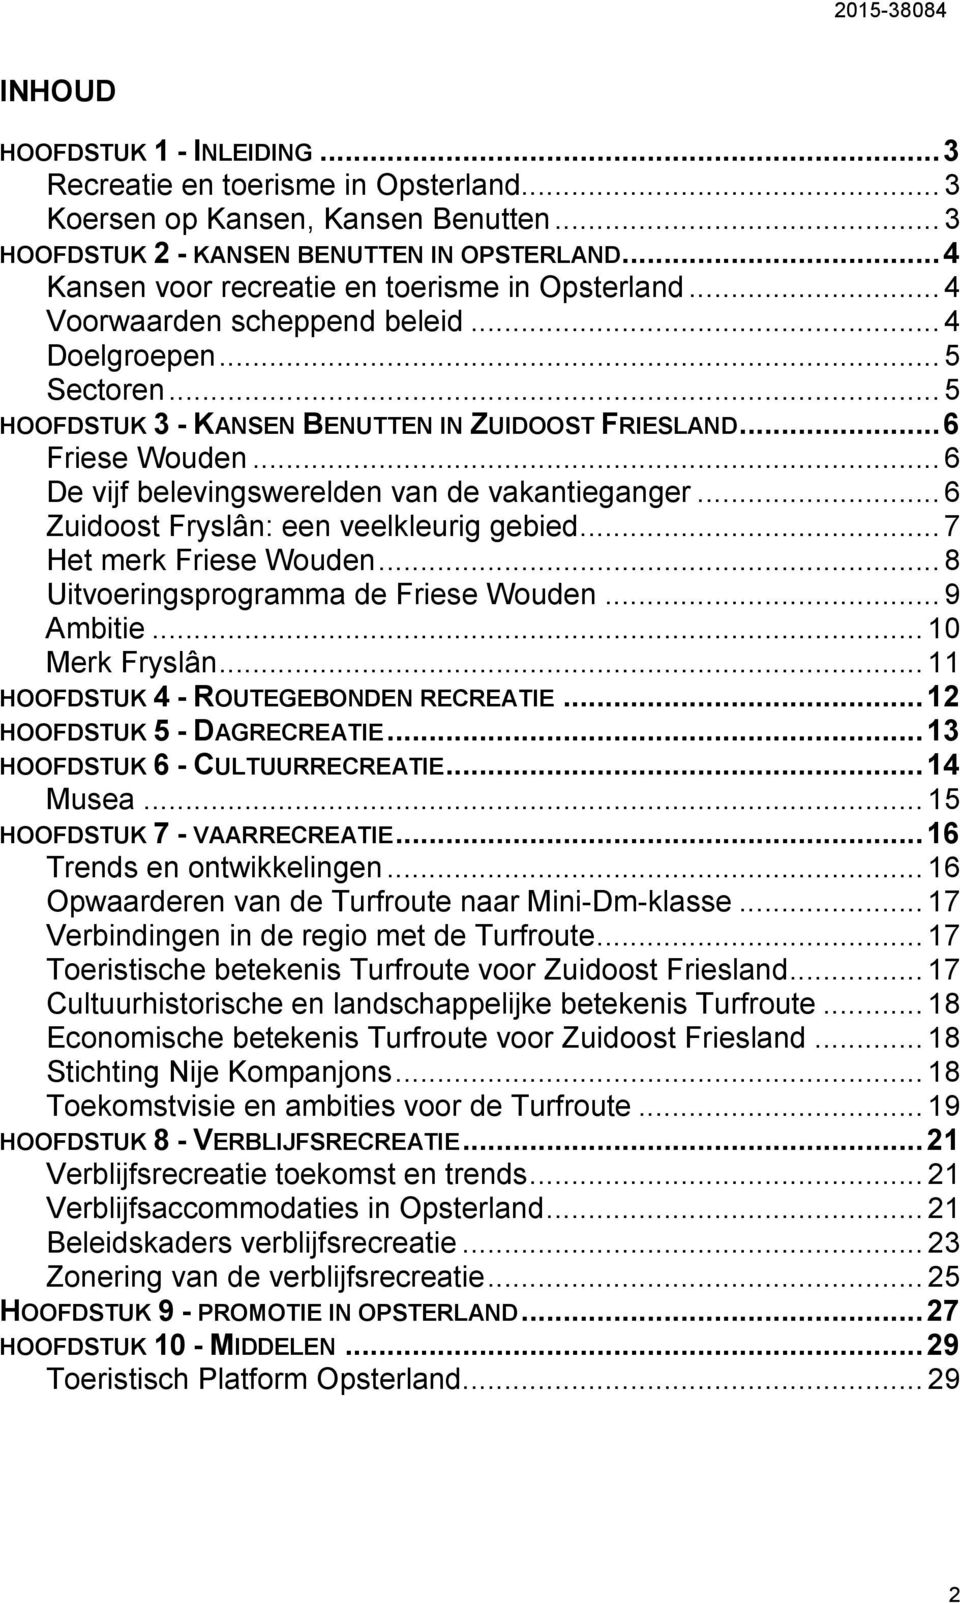 .. 6 De vijf belevingswerelden van de vakantieganger... 6 Zuidoost Fryslân: een veelkleurig gebied... 7 Het merk Friese Wouden... 8 Uitvoeringsprogramma de Friese Wouden... 9 Ambitie... 10 Merk Fryslân.